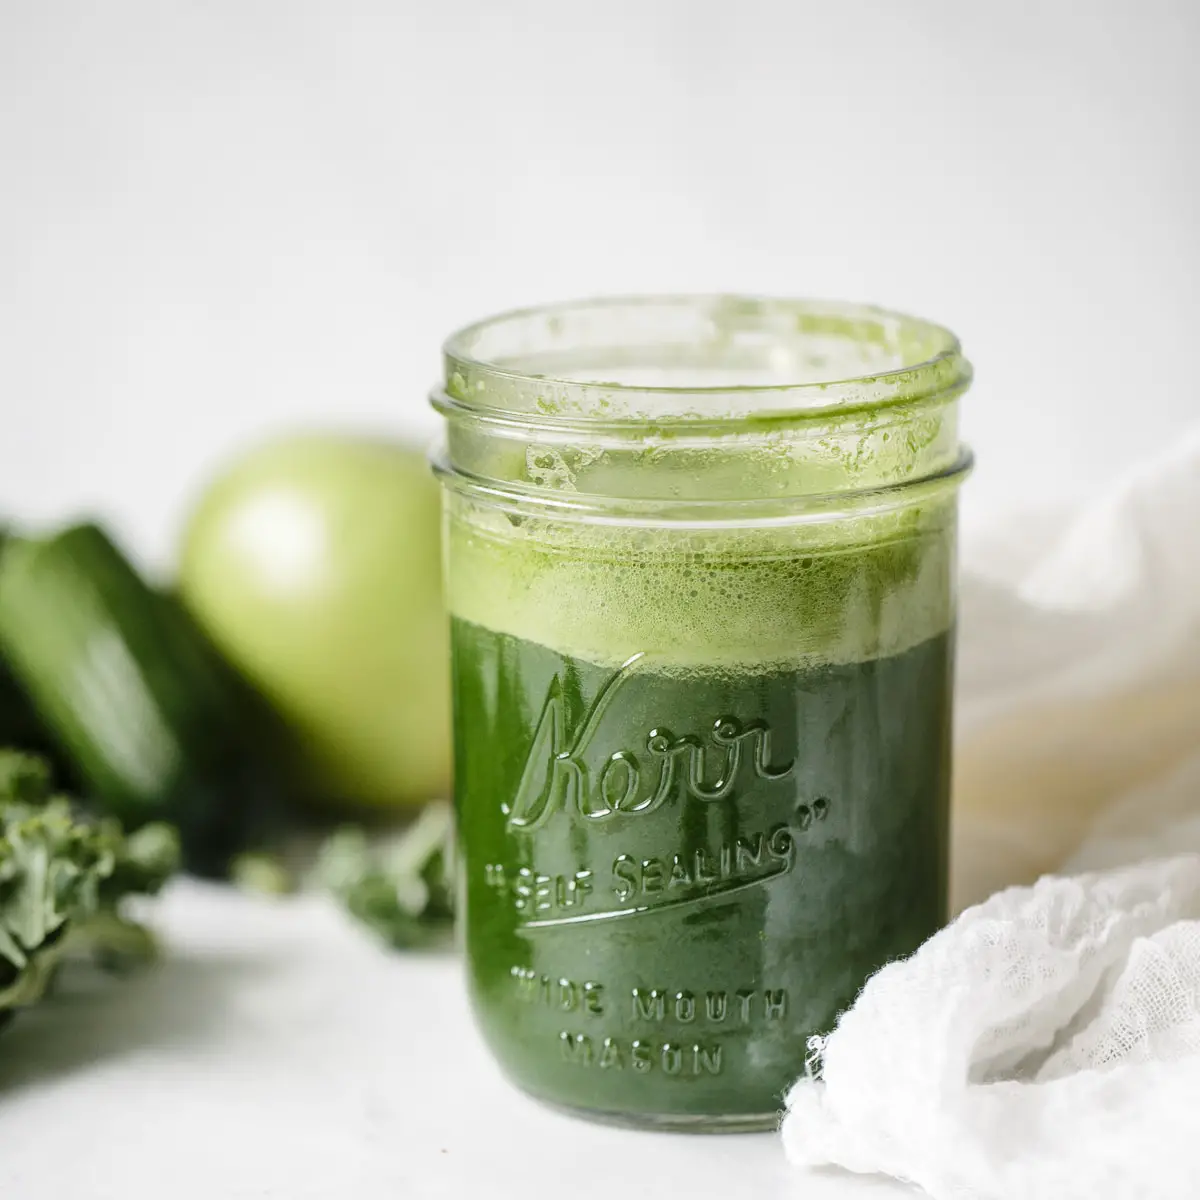 Healthy Green Juice Recipe